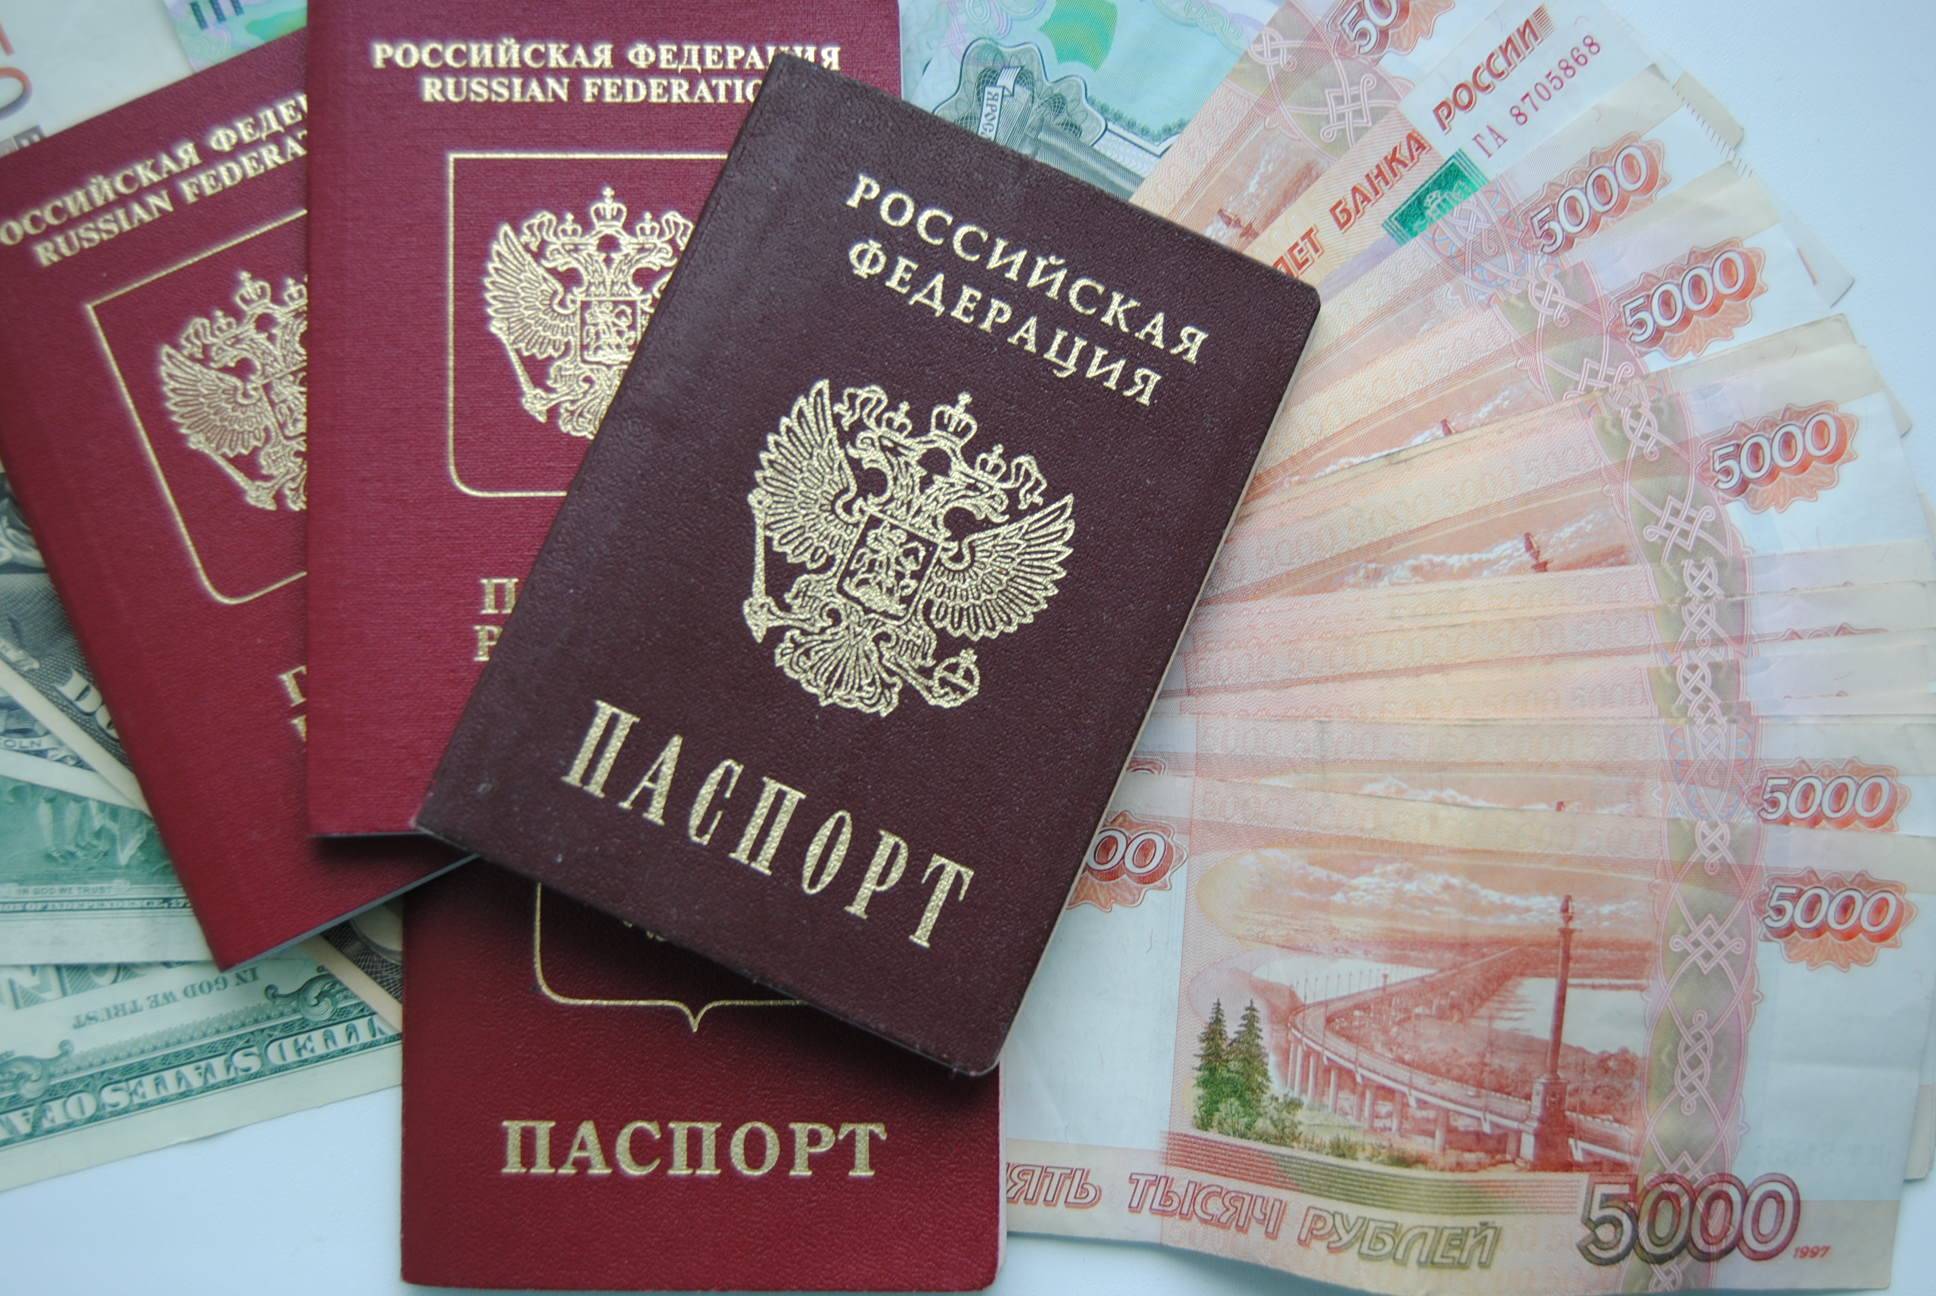 Взять кредит по фото паспорта без владельца